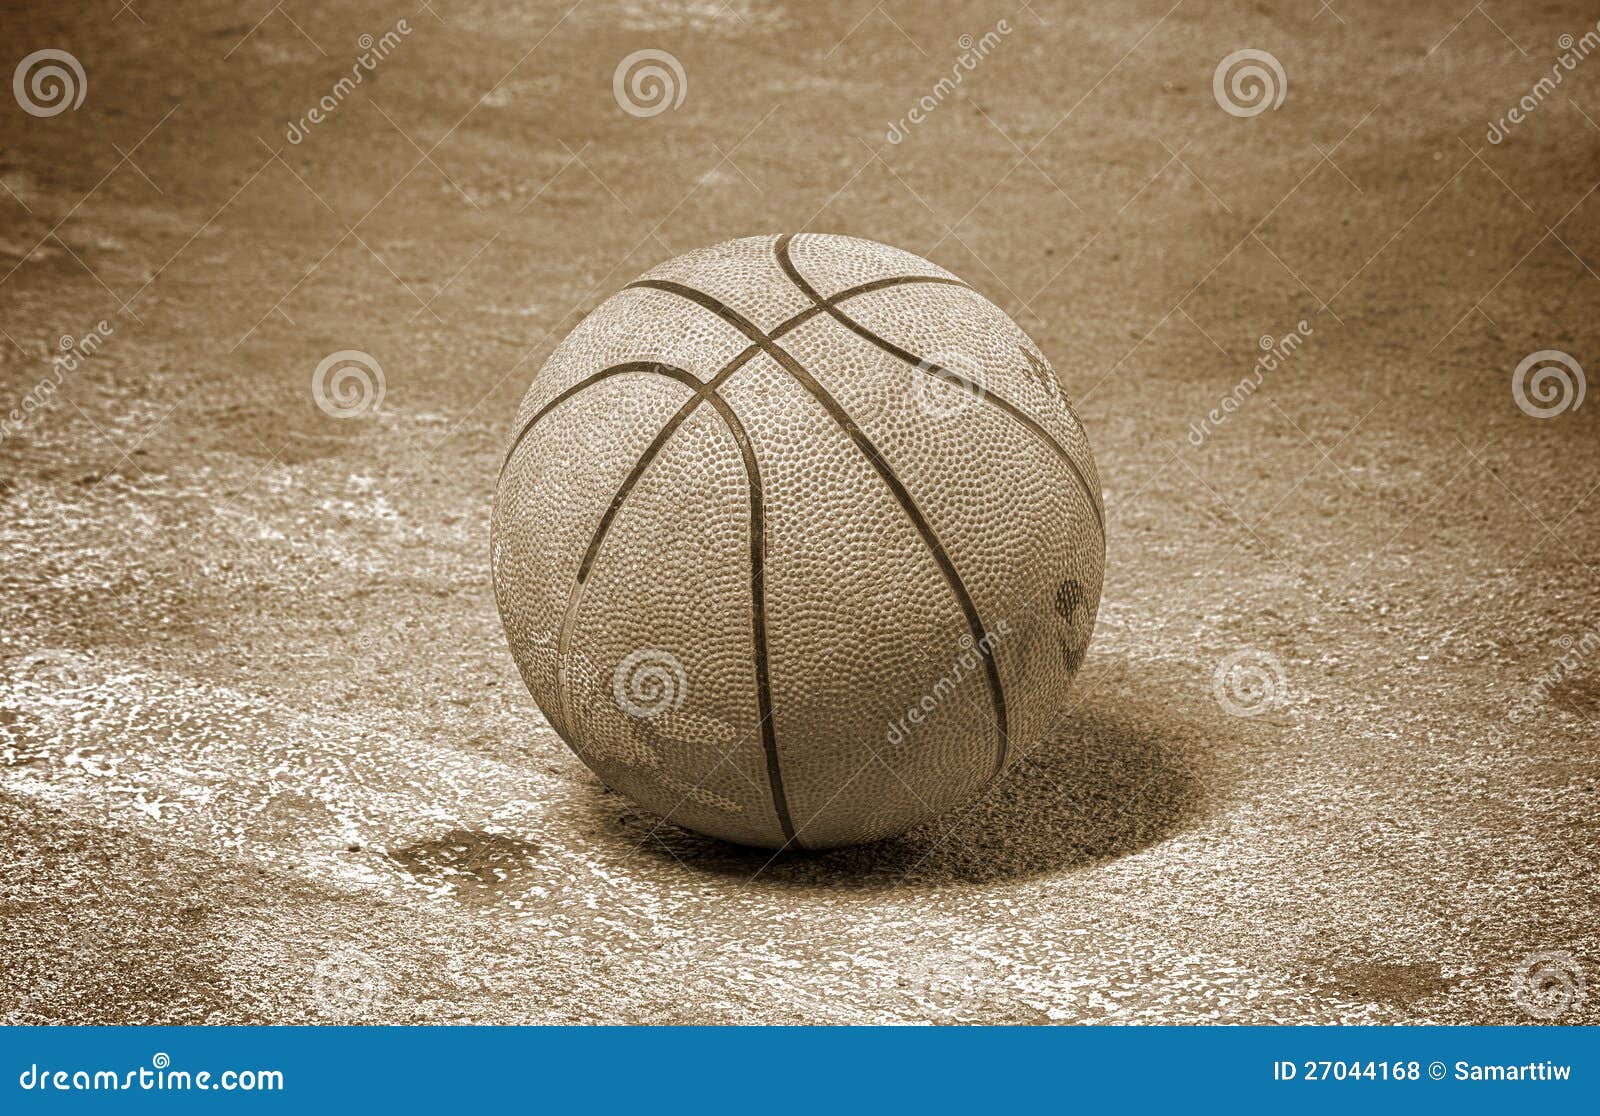 basketball.